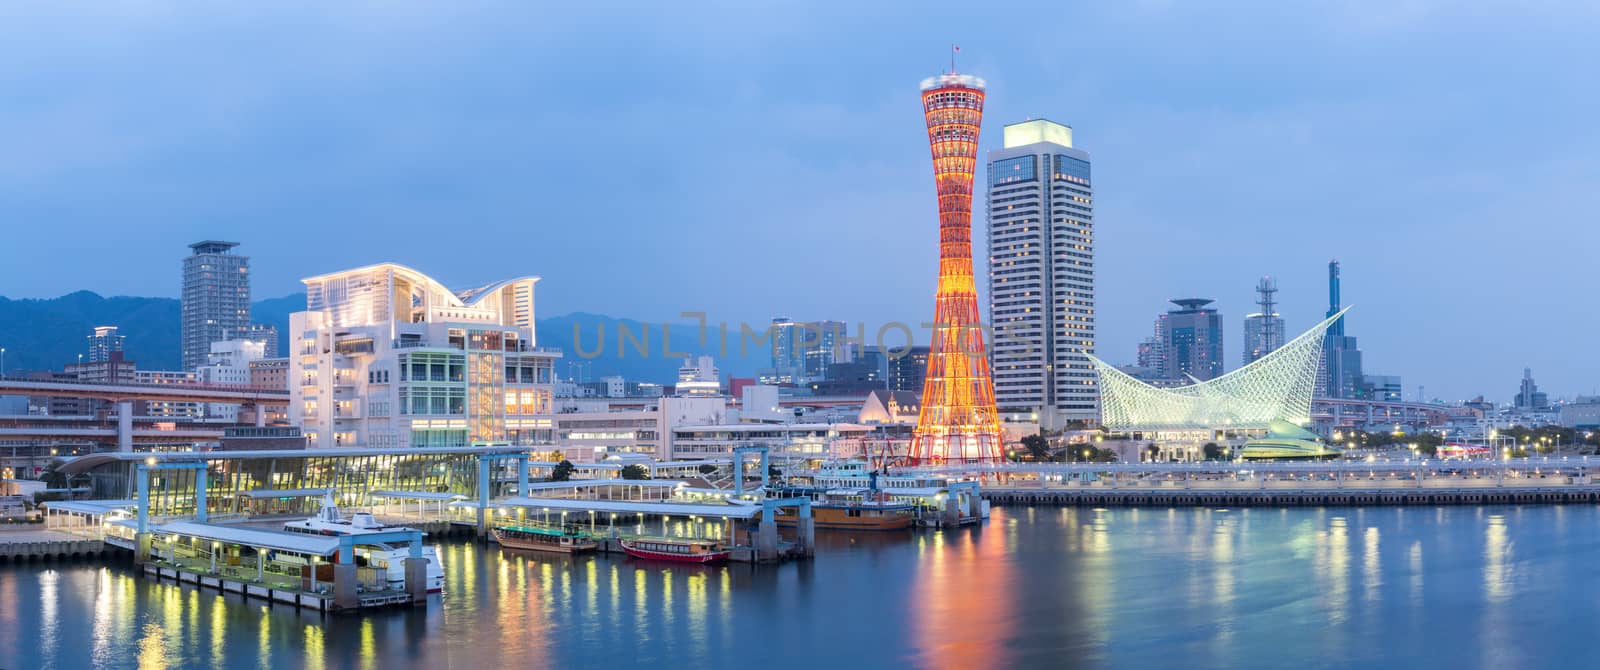 Kobe Tower Panorama by vichie81